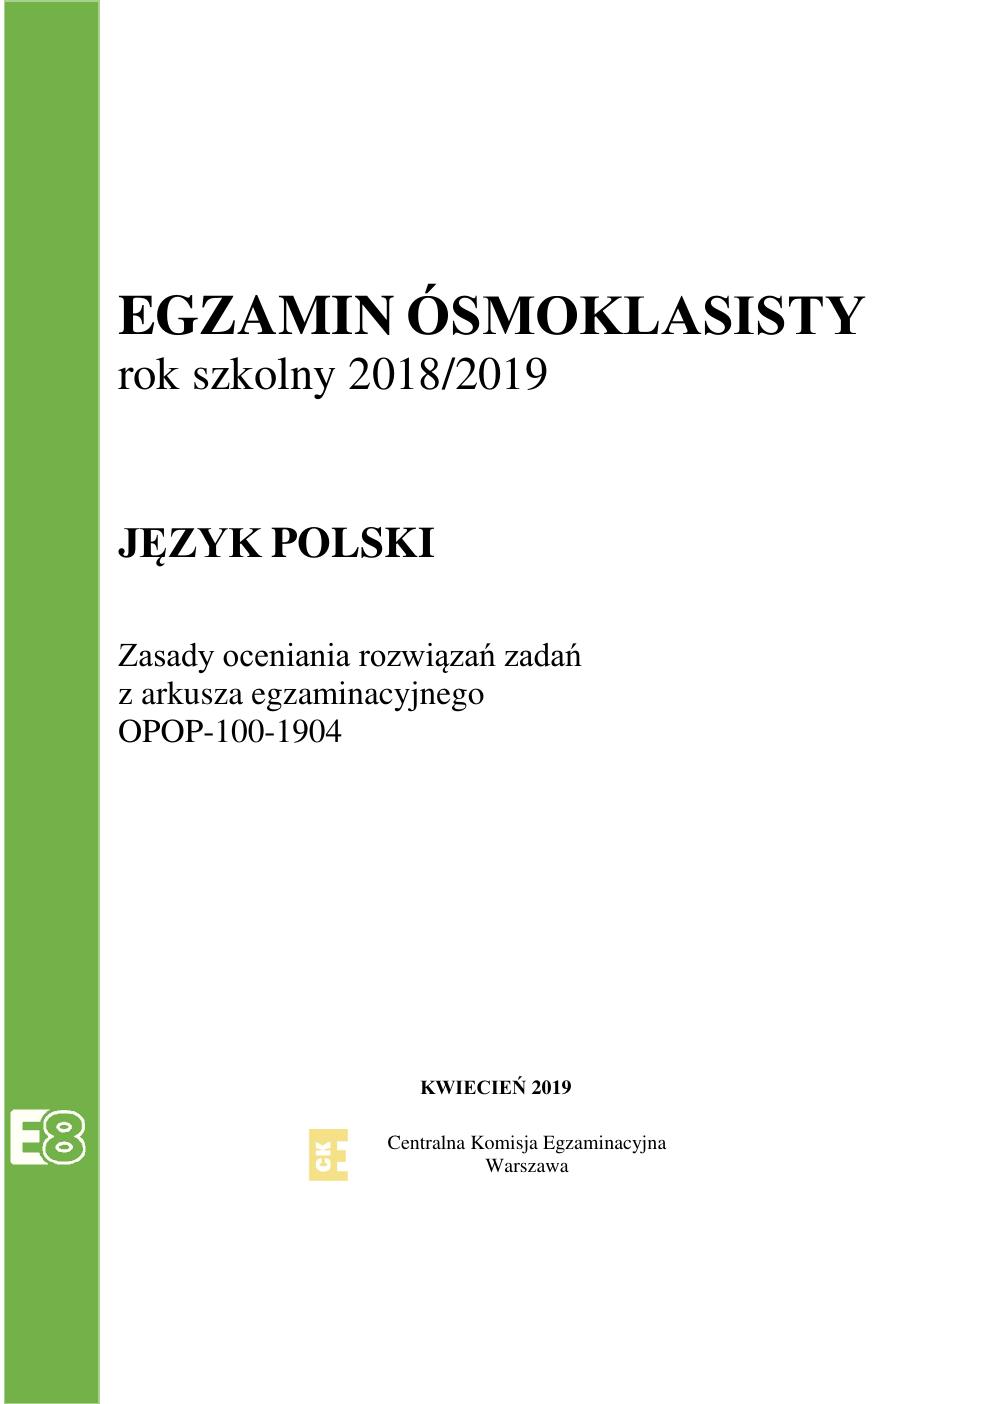 odpowiedzi - język polski - egzamin ósmoklasisty 2019-01